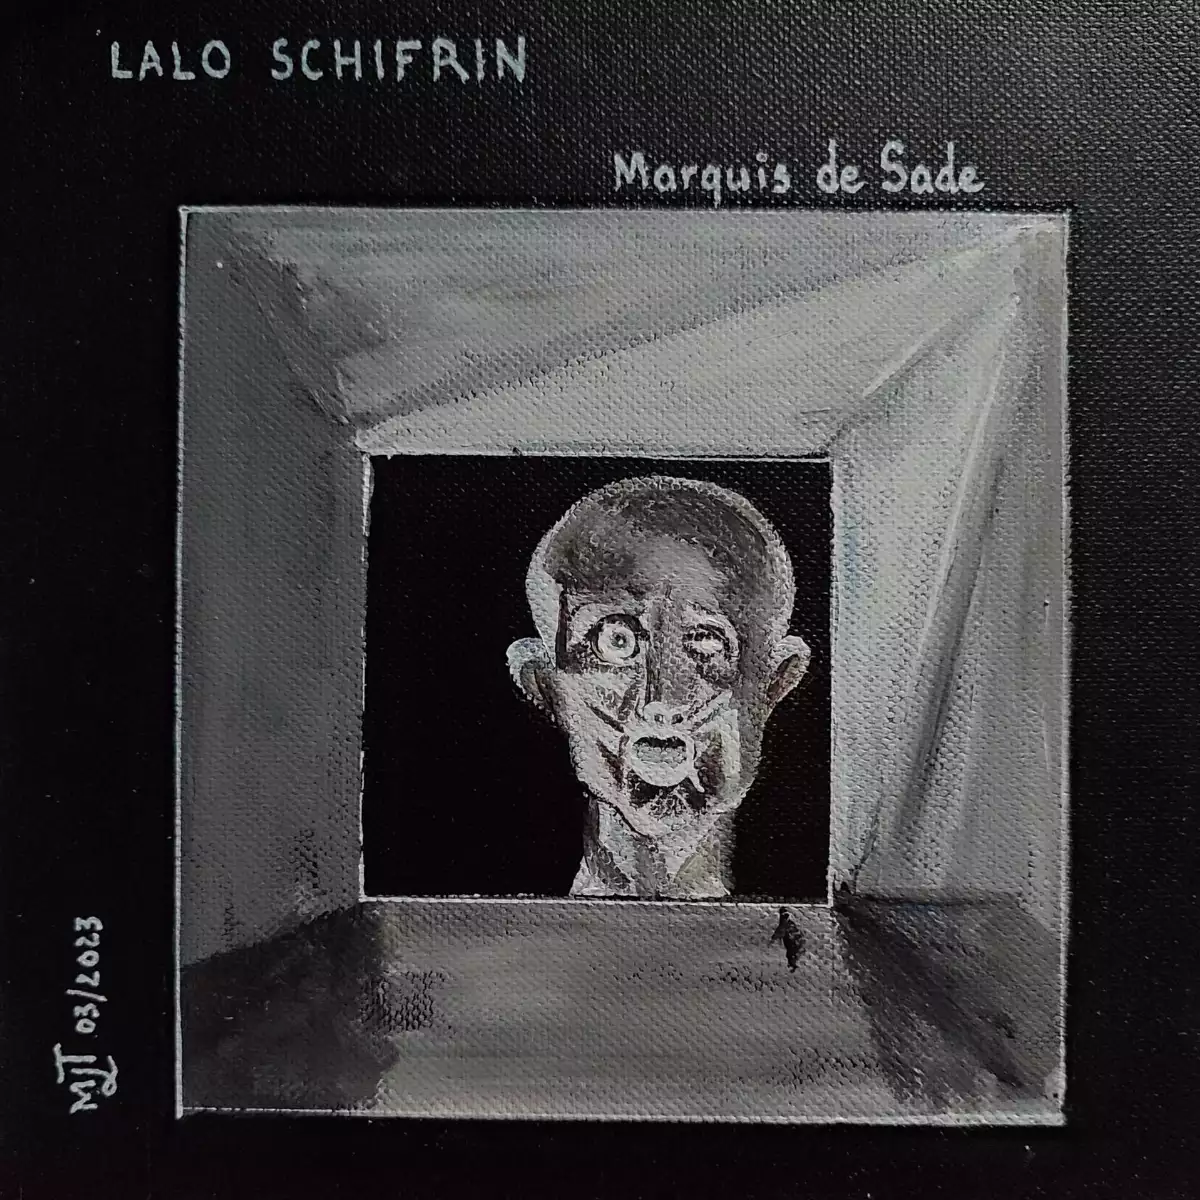 Lalo Schifrin Marquis de Sade (acrylique)